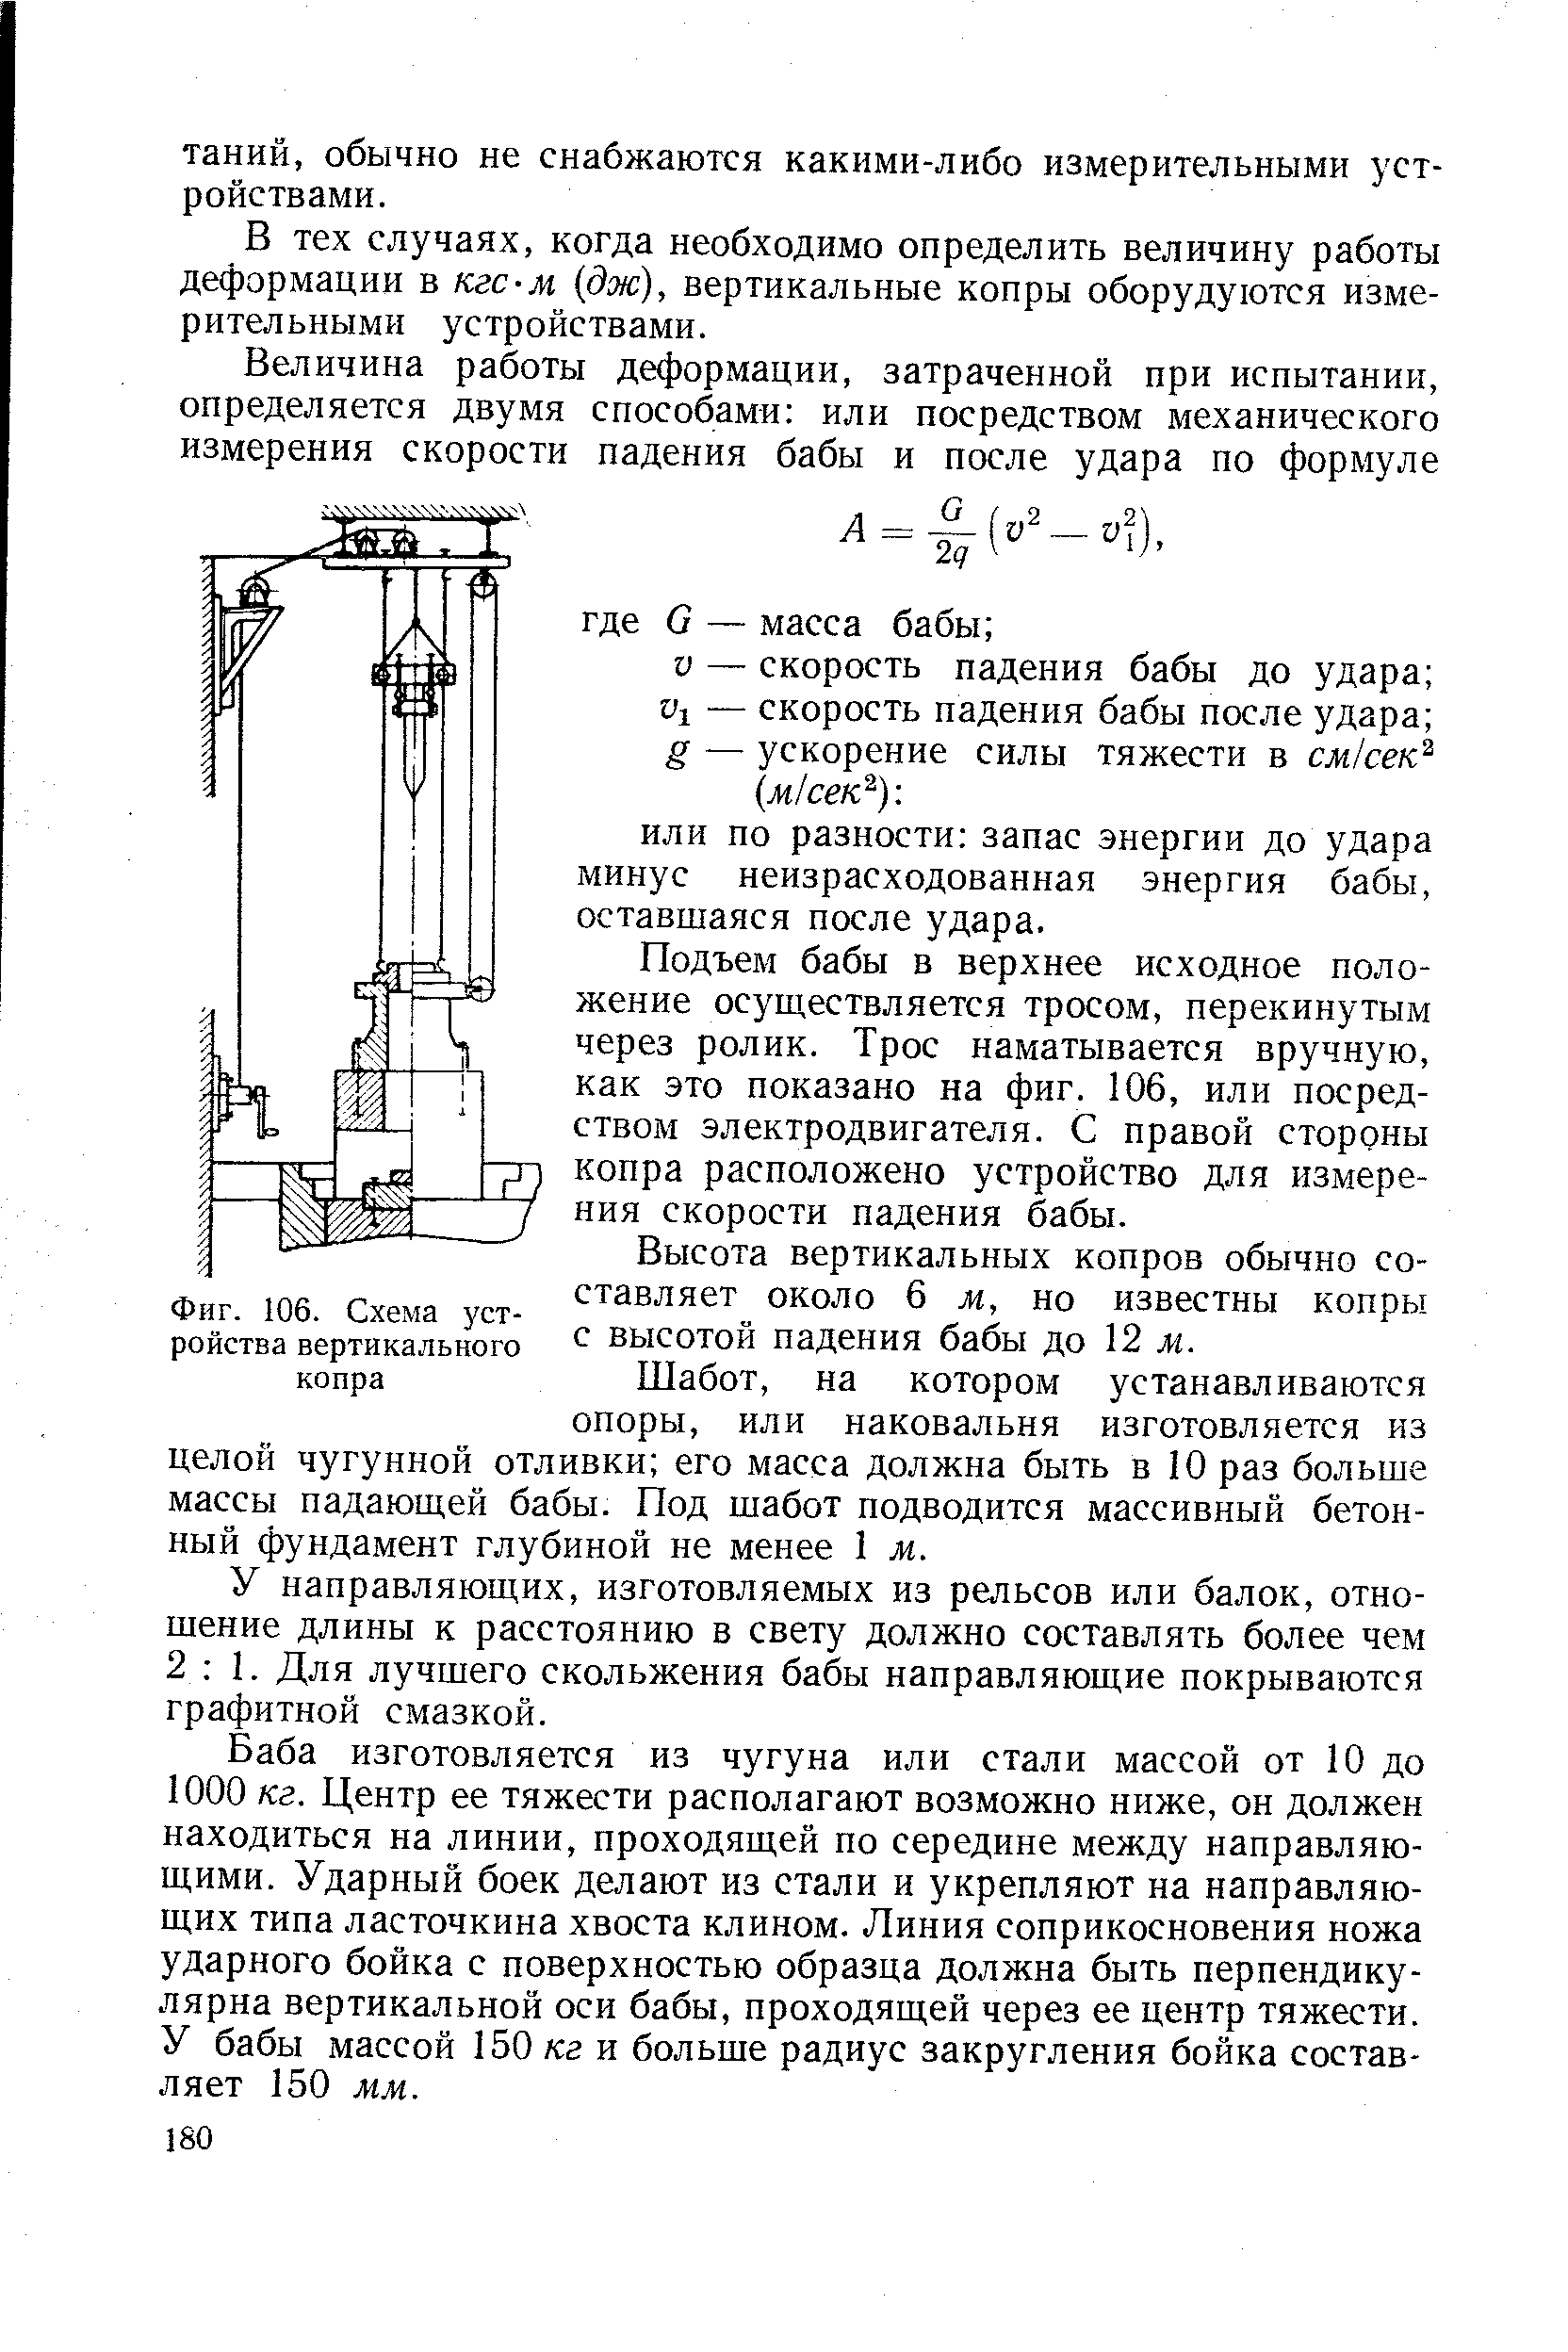 Фиг. 106. Схема устройства вертикального копра
